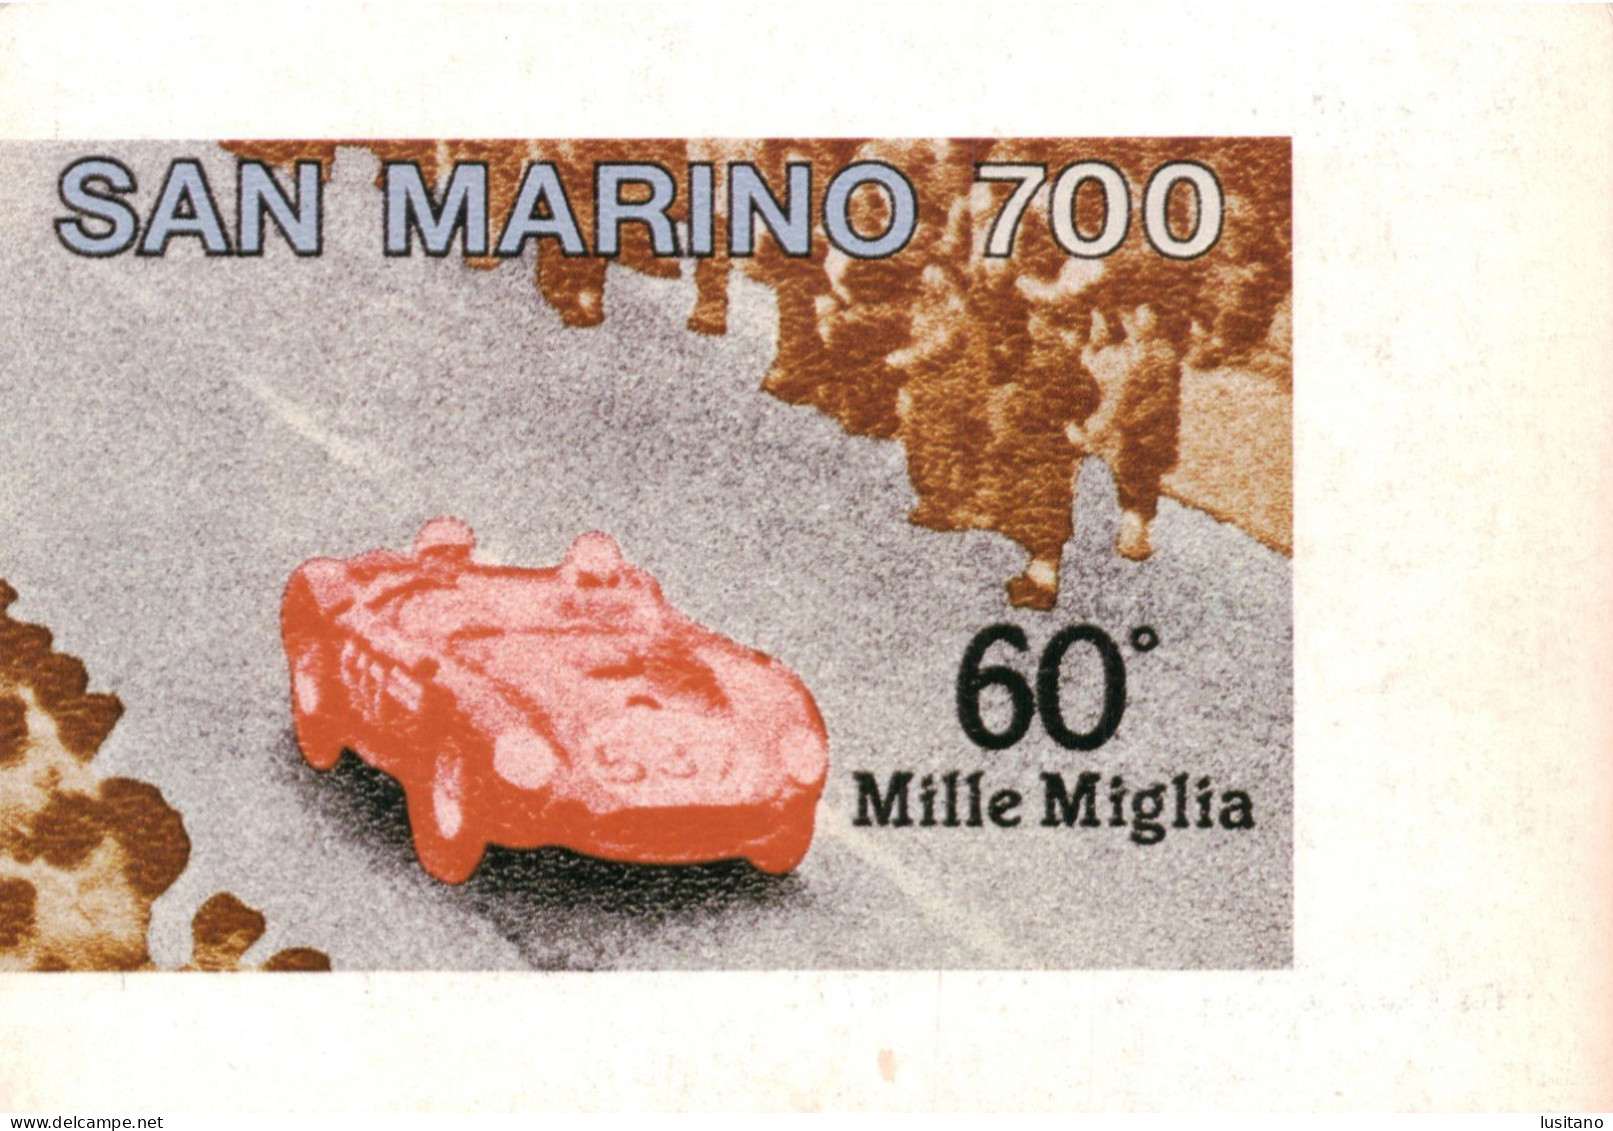 San Marino, 60º Mille Miglia, 1987, Race Racing Rally Car Motorsports Motorsports Card Nº0771 (1000) - Rally Racing